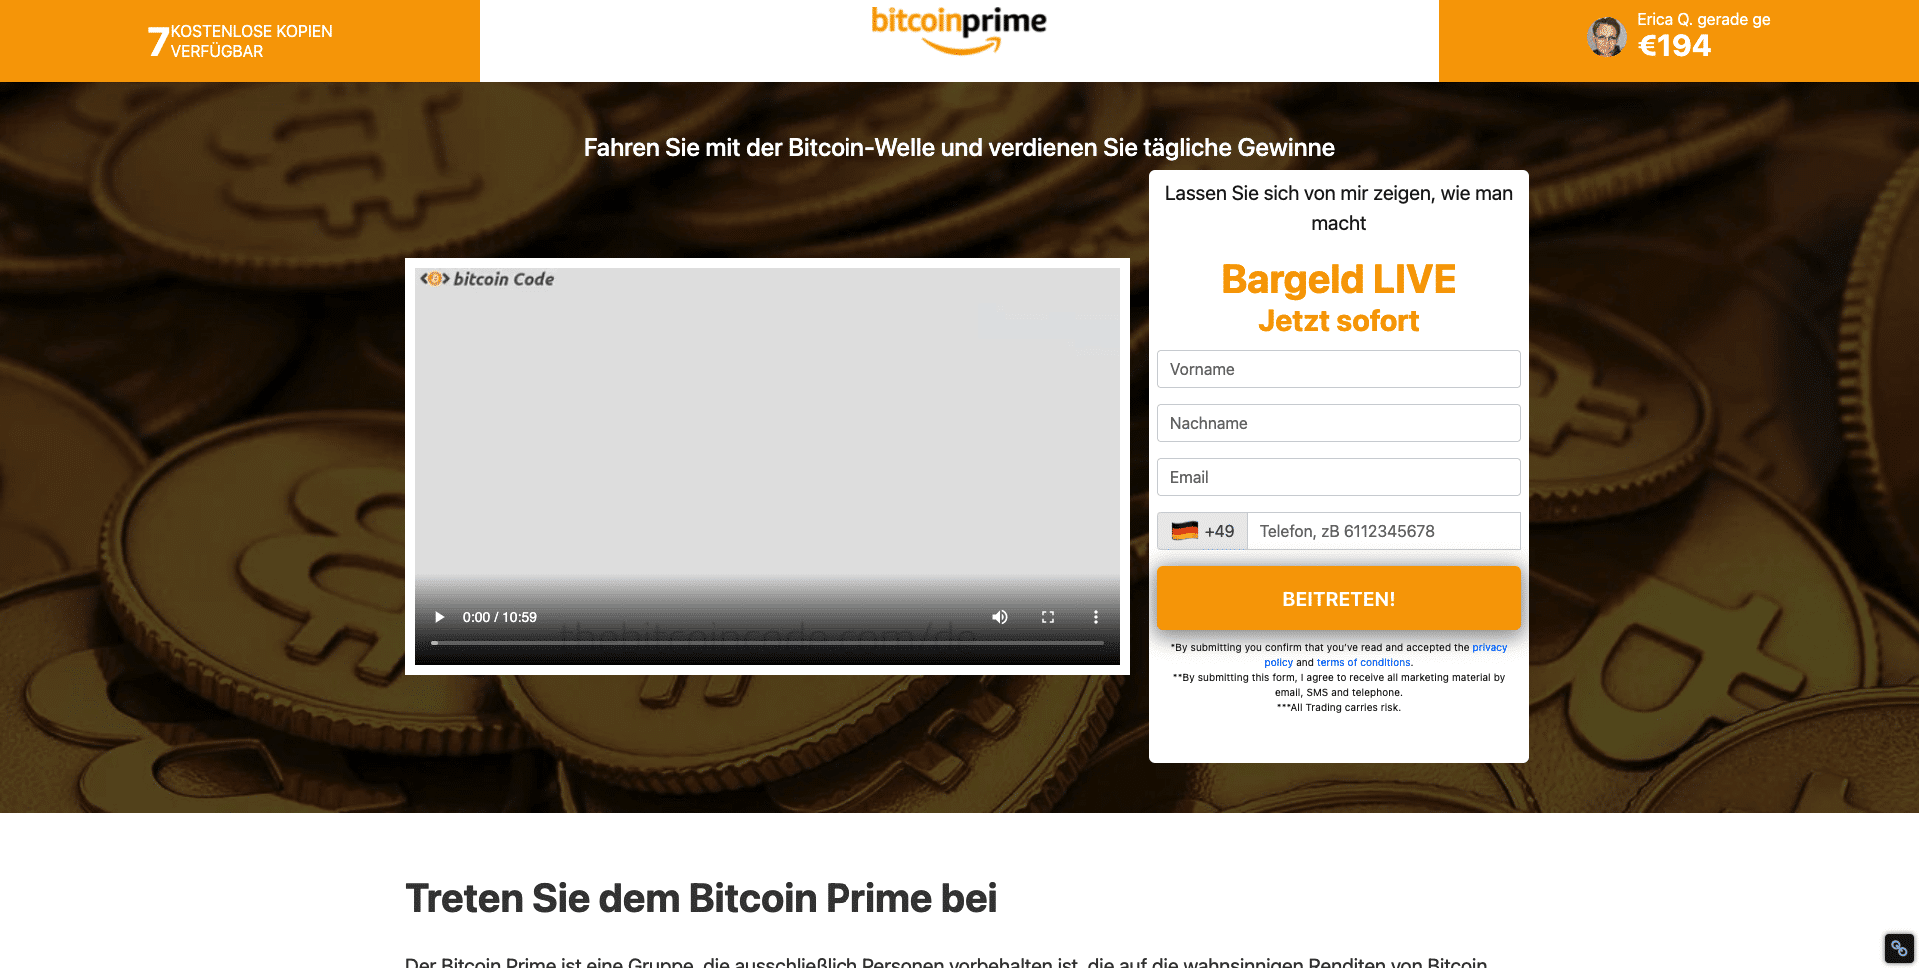 Bitcoin prime